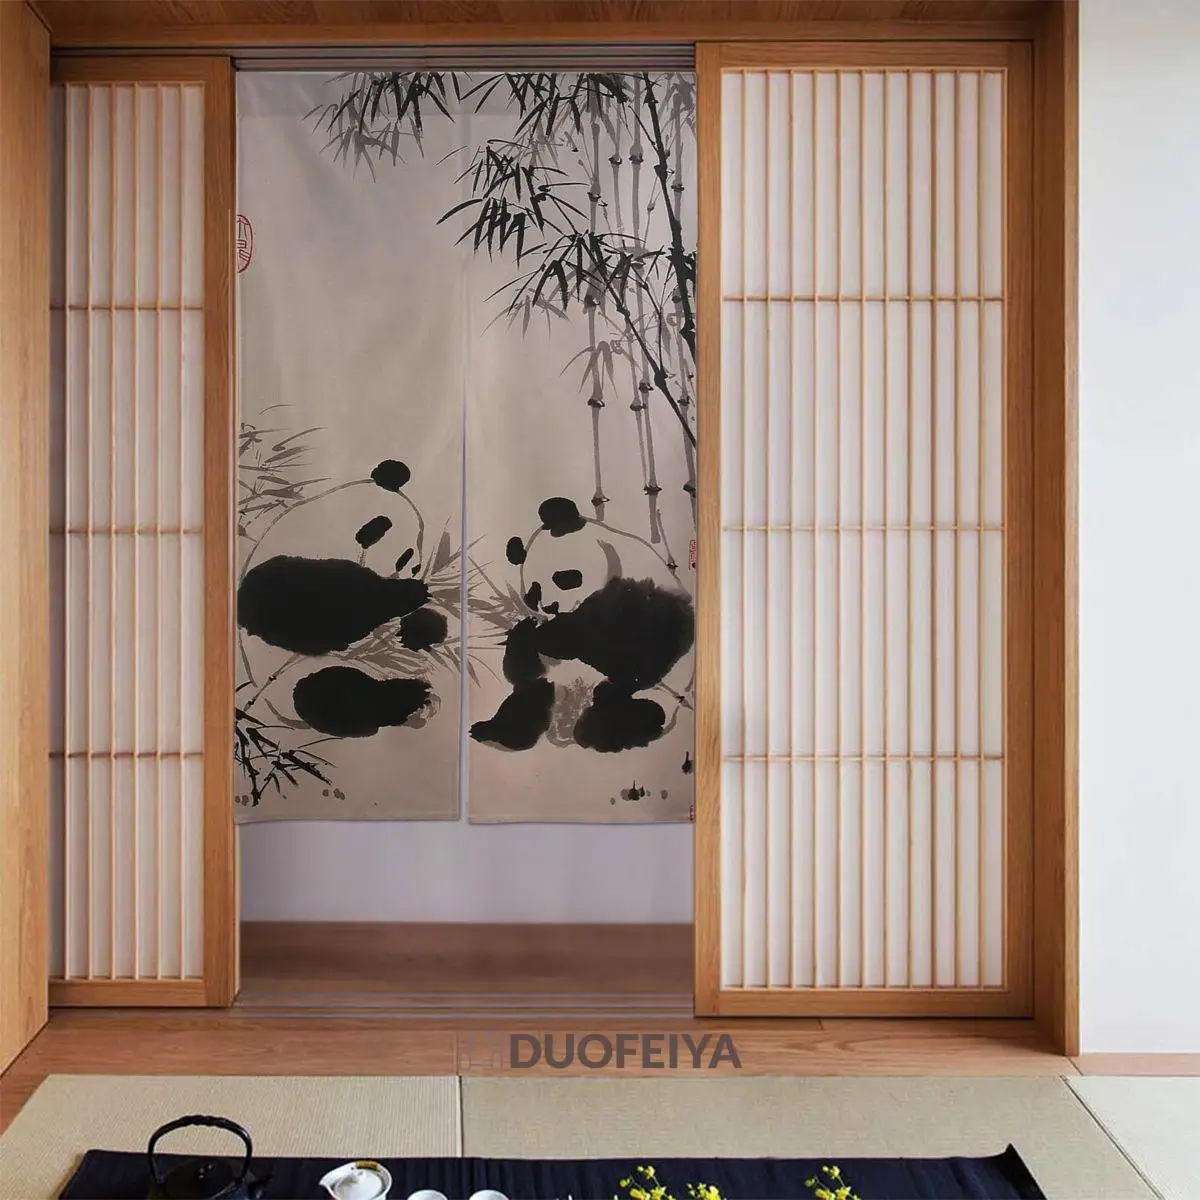 

Китайская панда бамбуковая чернильная дверная занавеска спокойная картина затемняющие занавески из хлопка и льна забавные занавески для в...